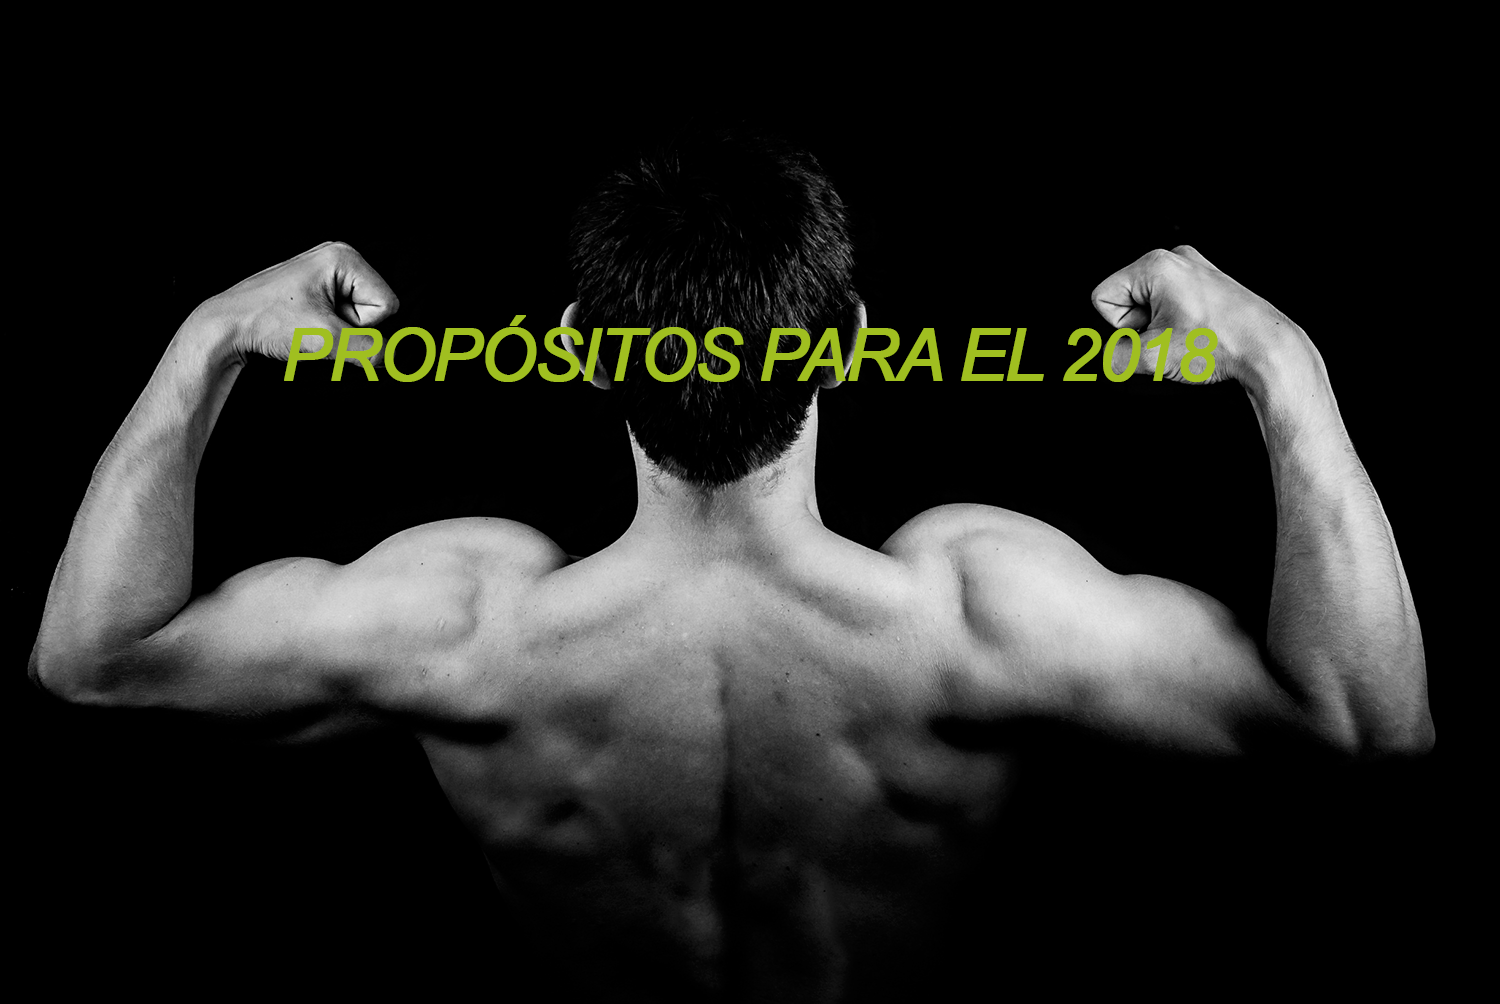 Propósitos para el 2018 by Carlos del Pino - Profitness Trainer